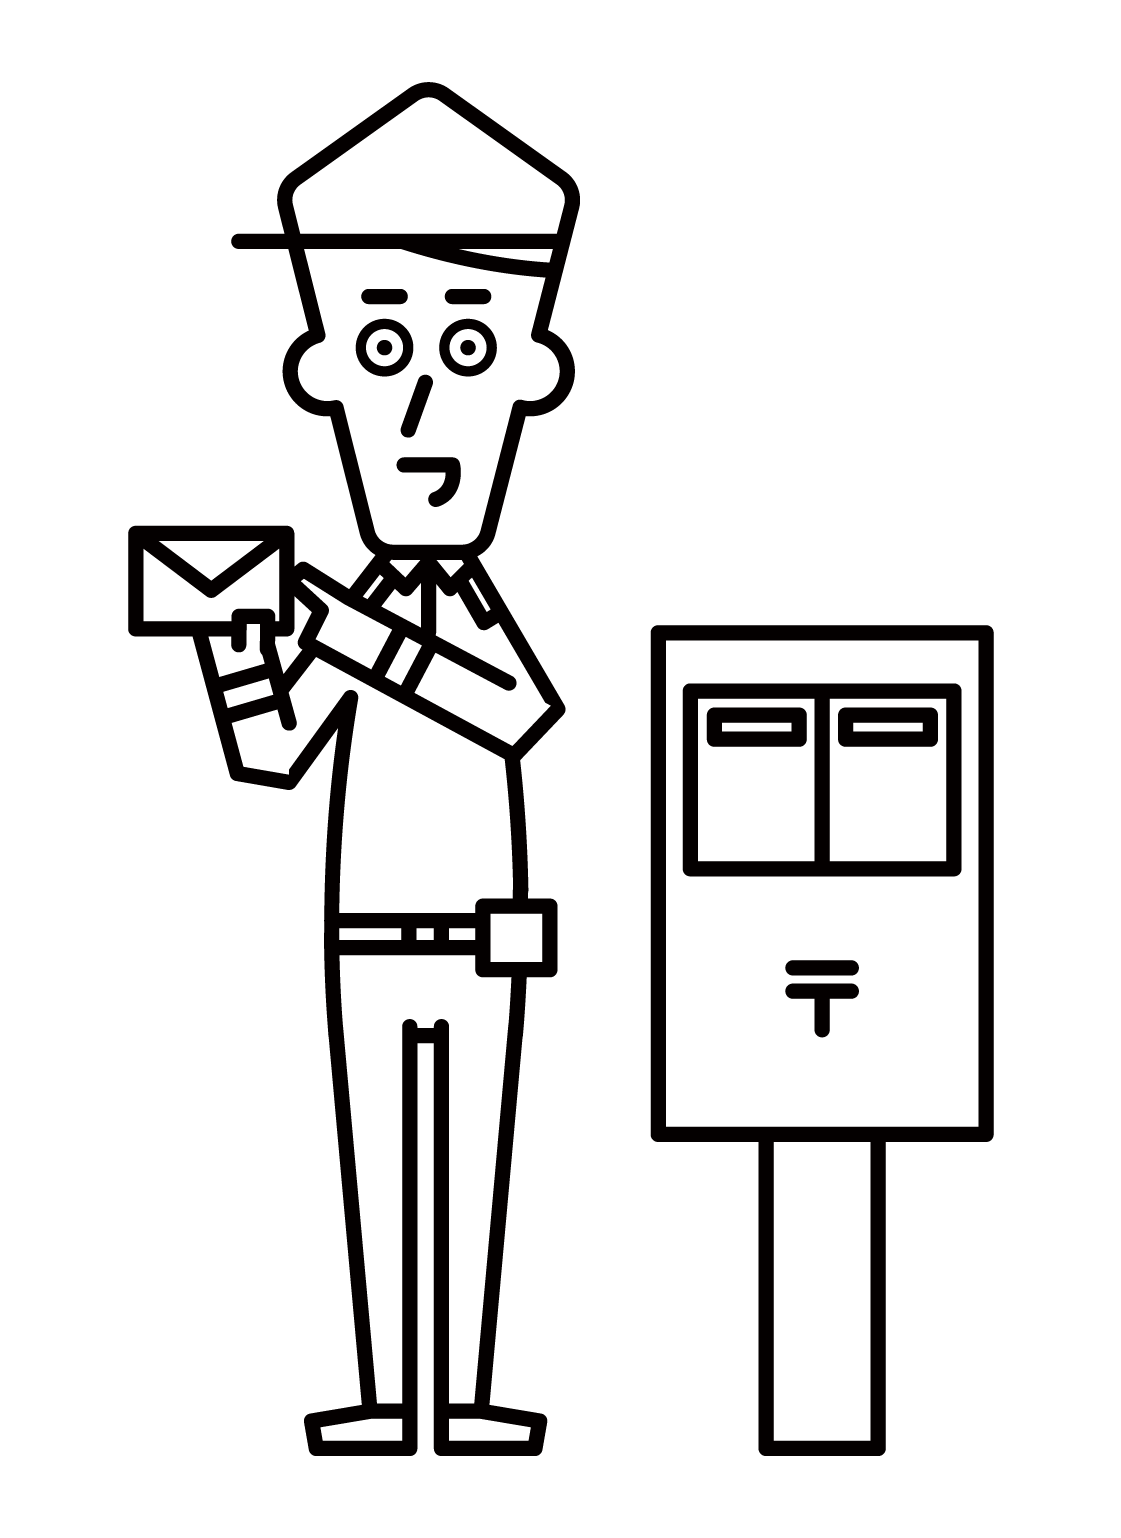 站在信箱旁邊的郵局工作人員（男性）的插圖